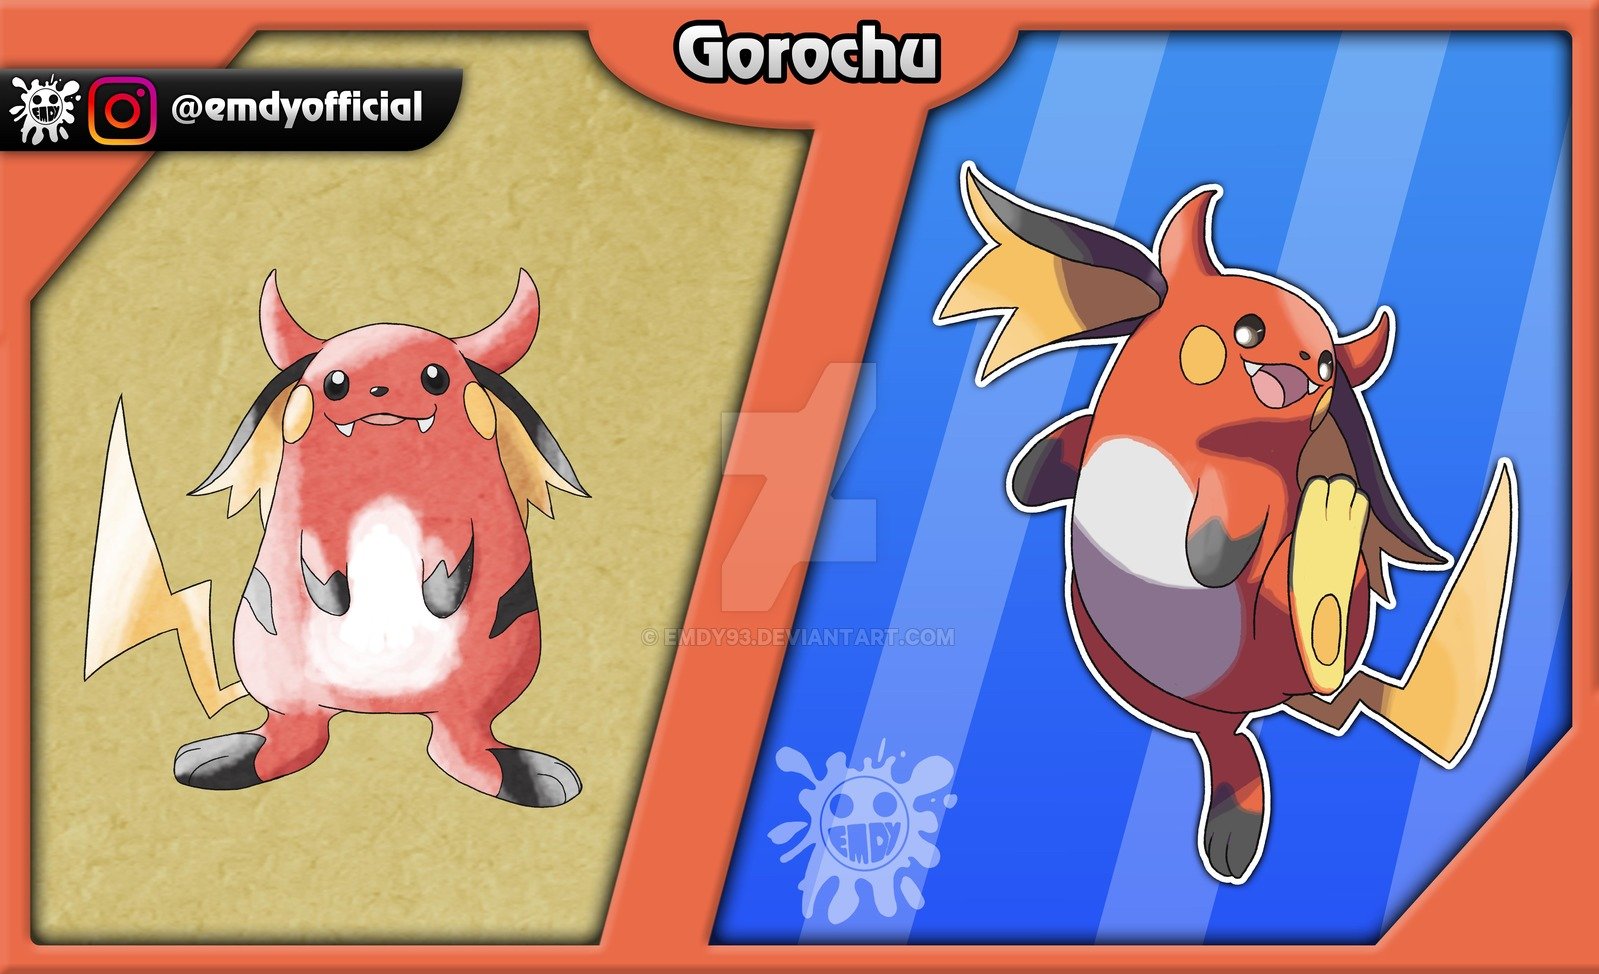 Pikachu quase teve uma terceira evolução chamada de Gorochu